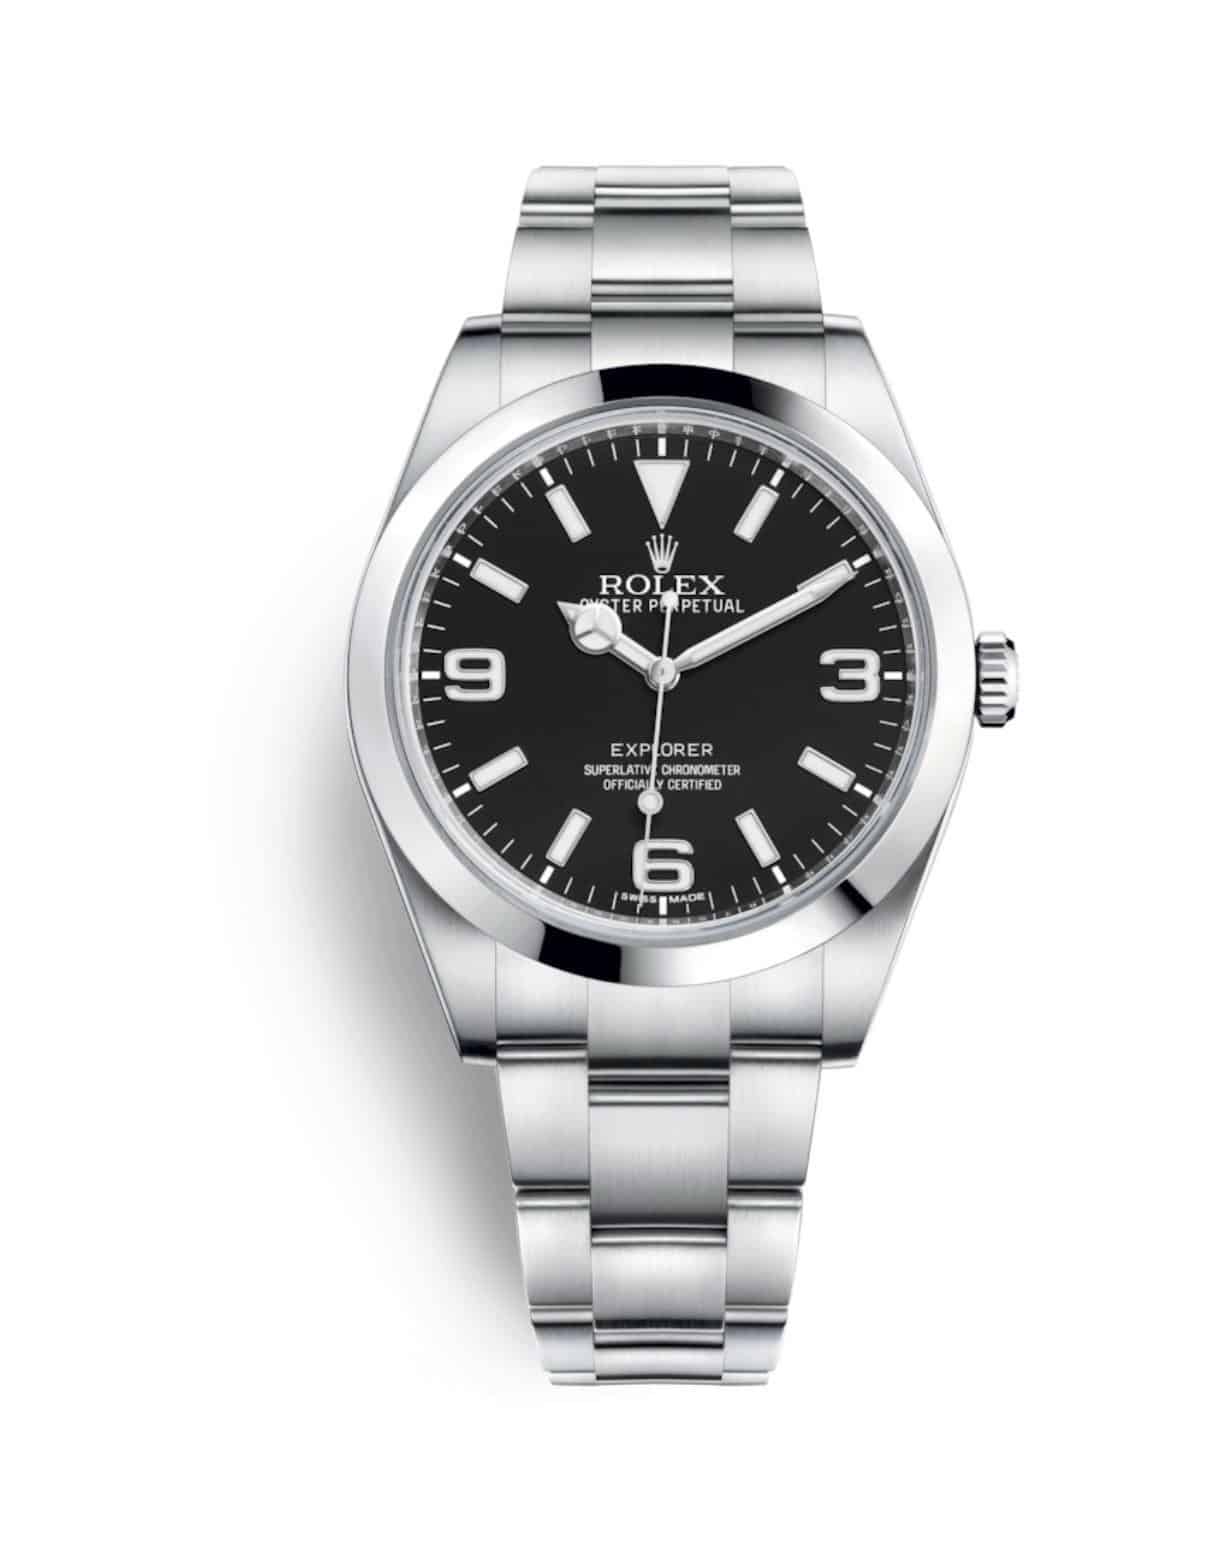 Die Gewährleistung von Rolex für neue Uhrenmodelle wie dieses Rolex Explorer beträgt 5 Jahre